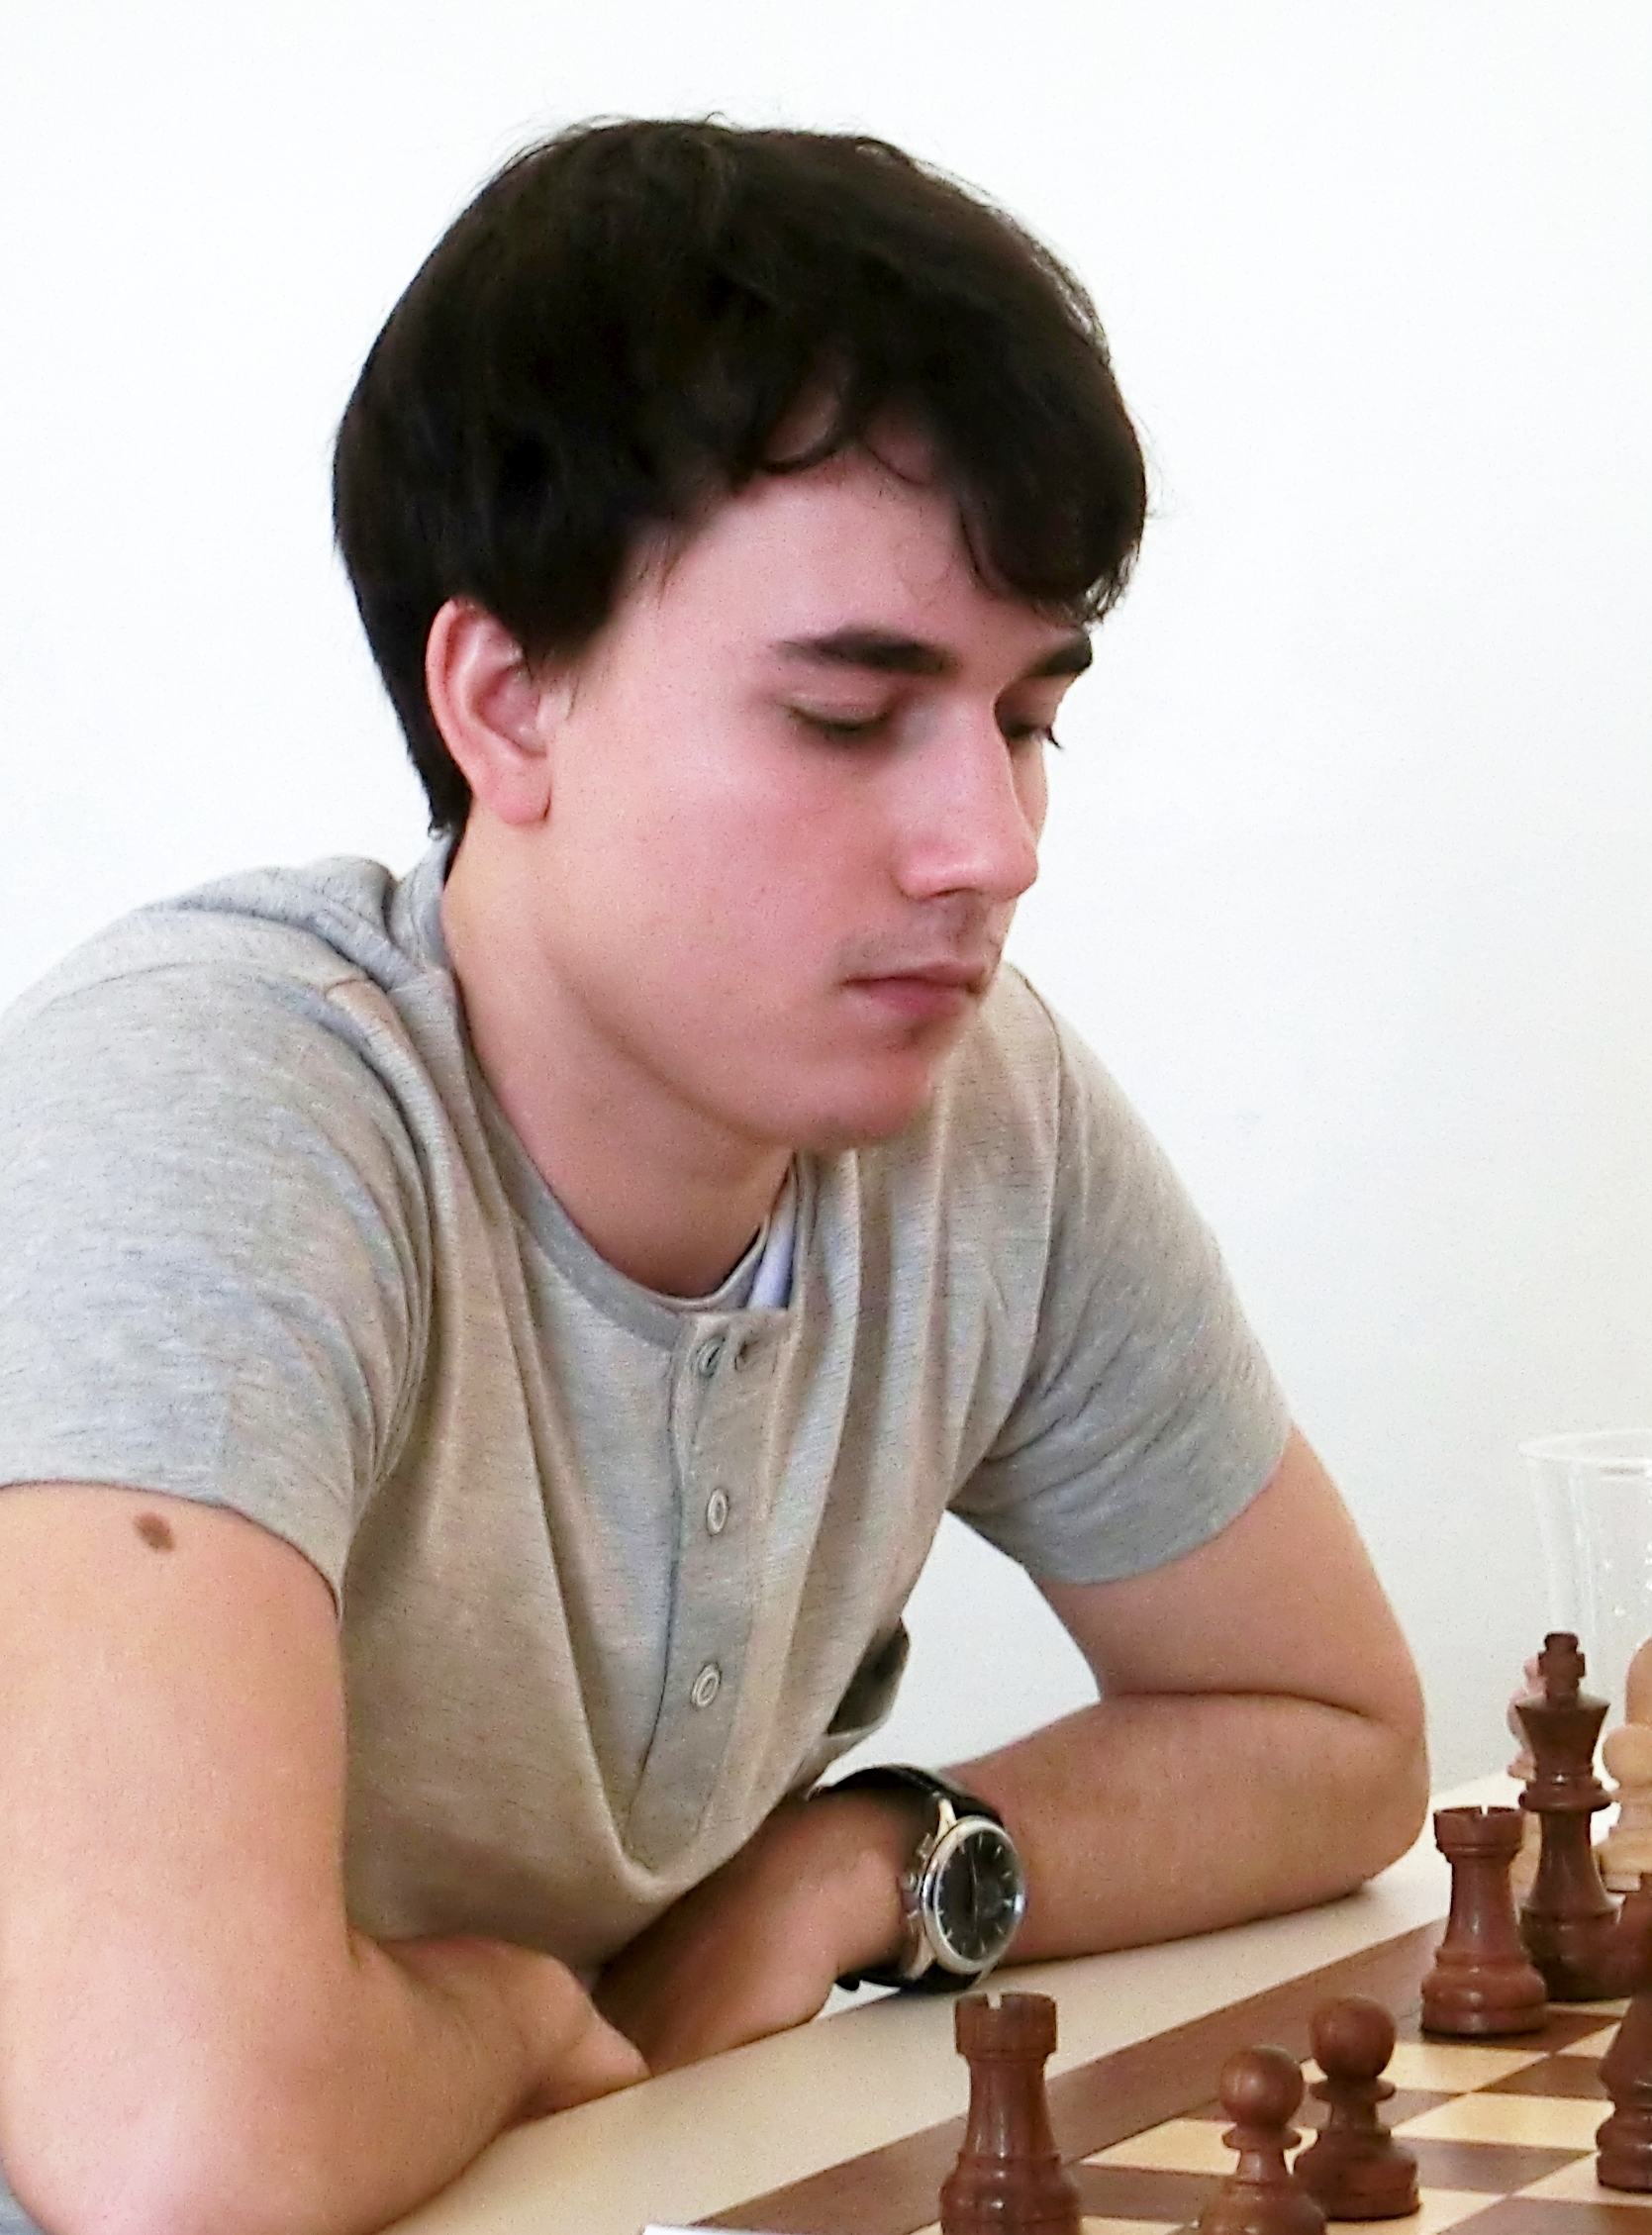 Chess — Frank Tschöpe